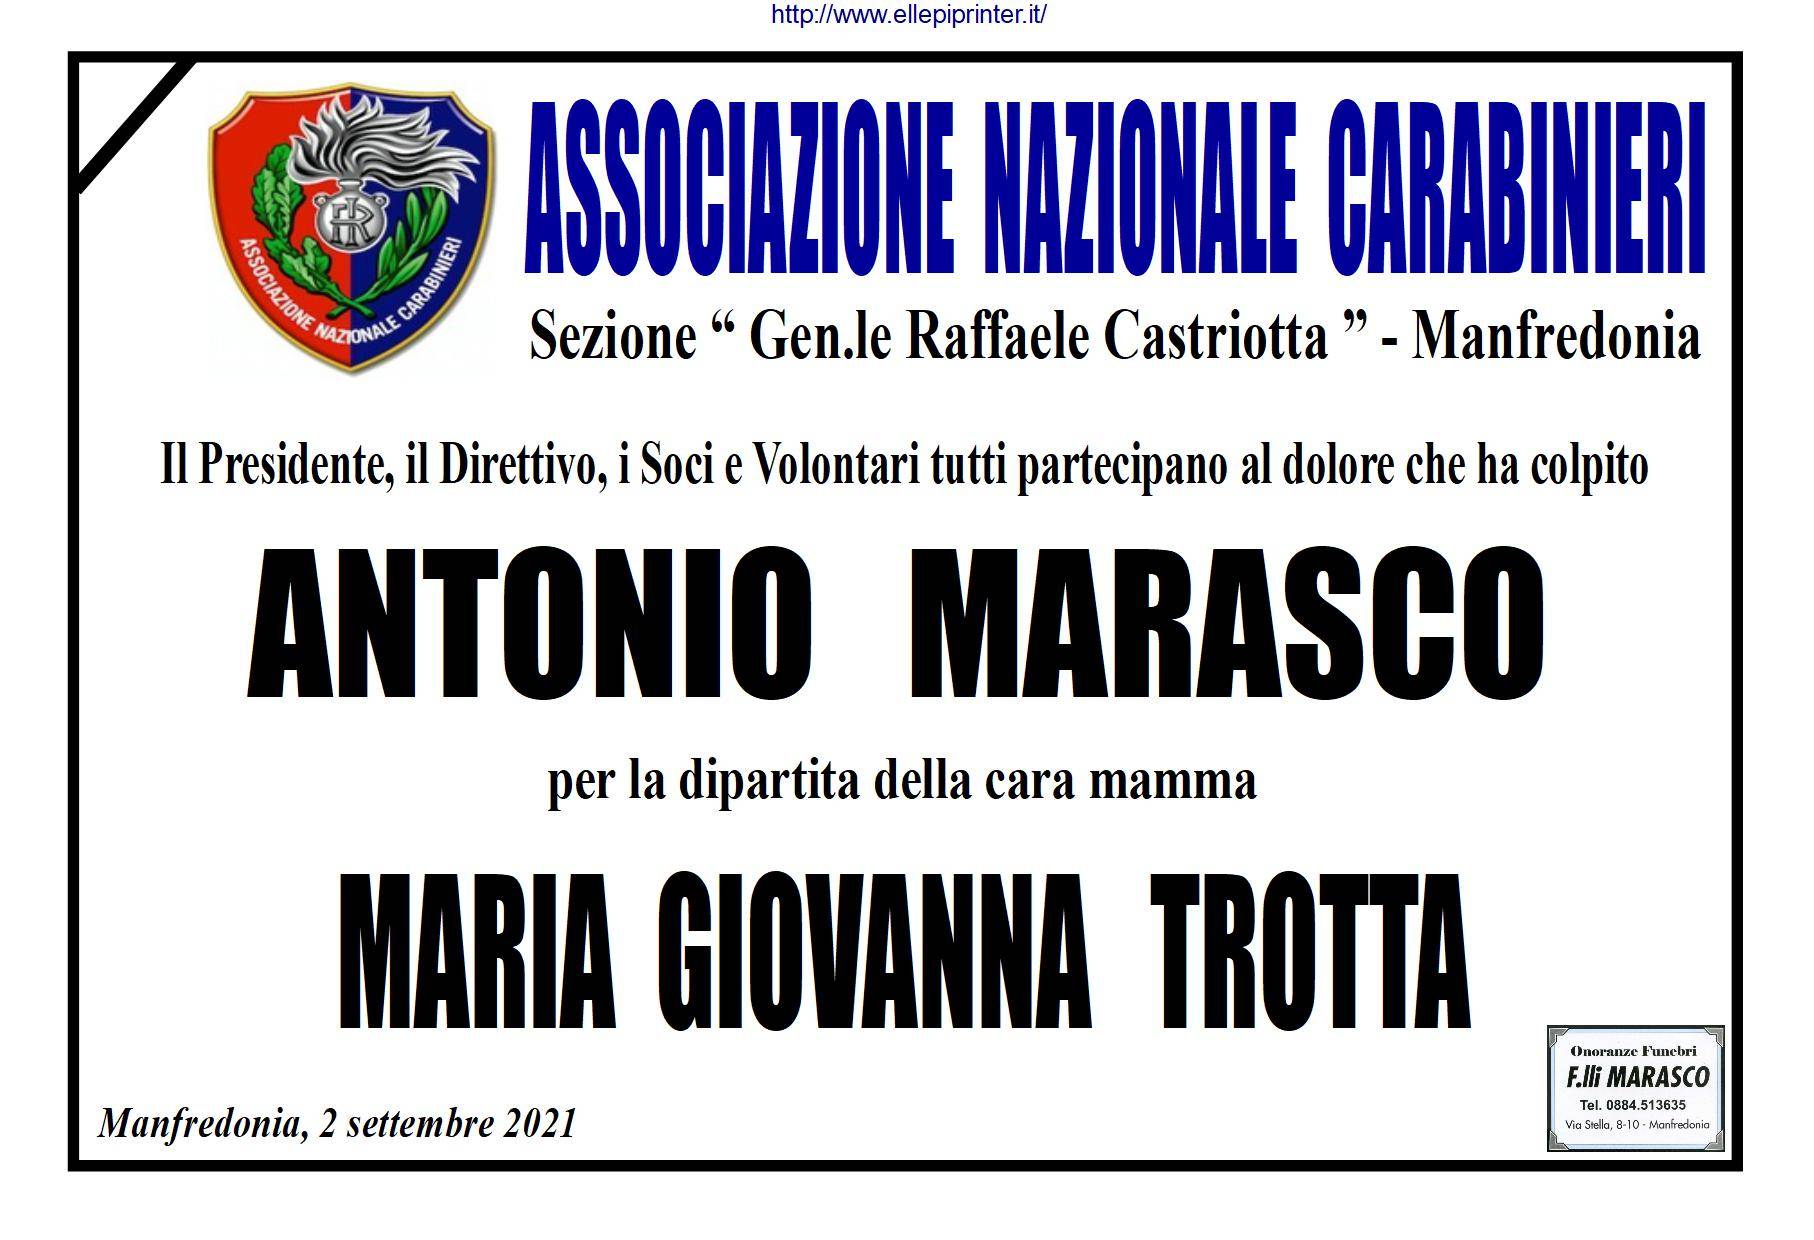 Maria Giovanna Trotta